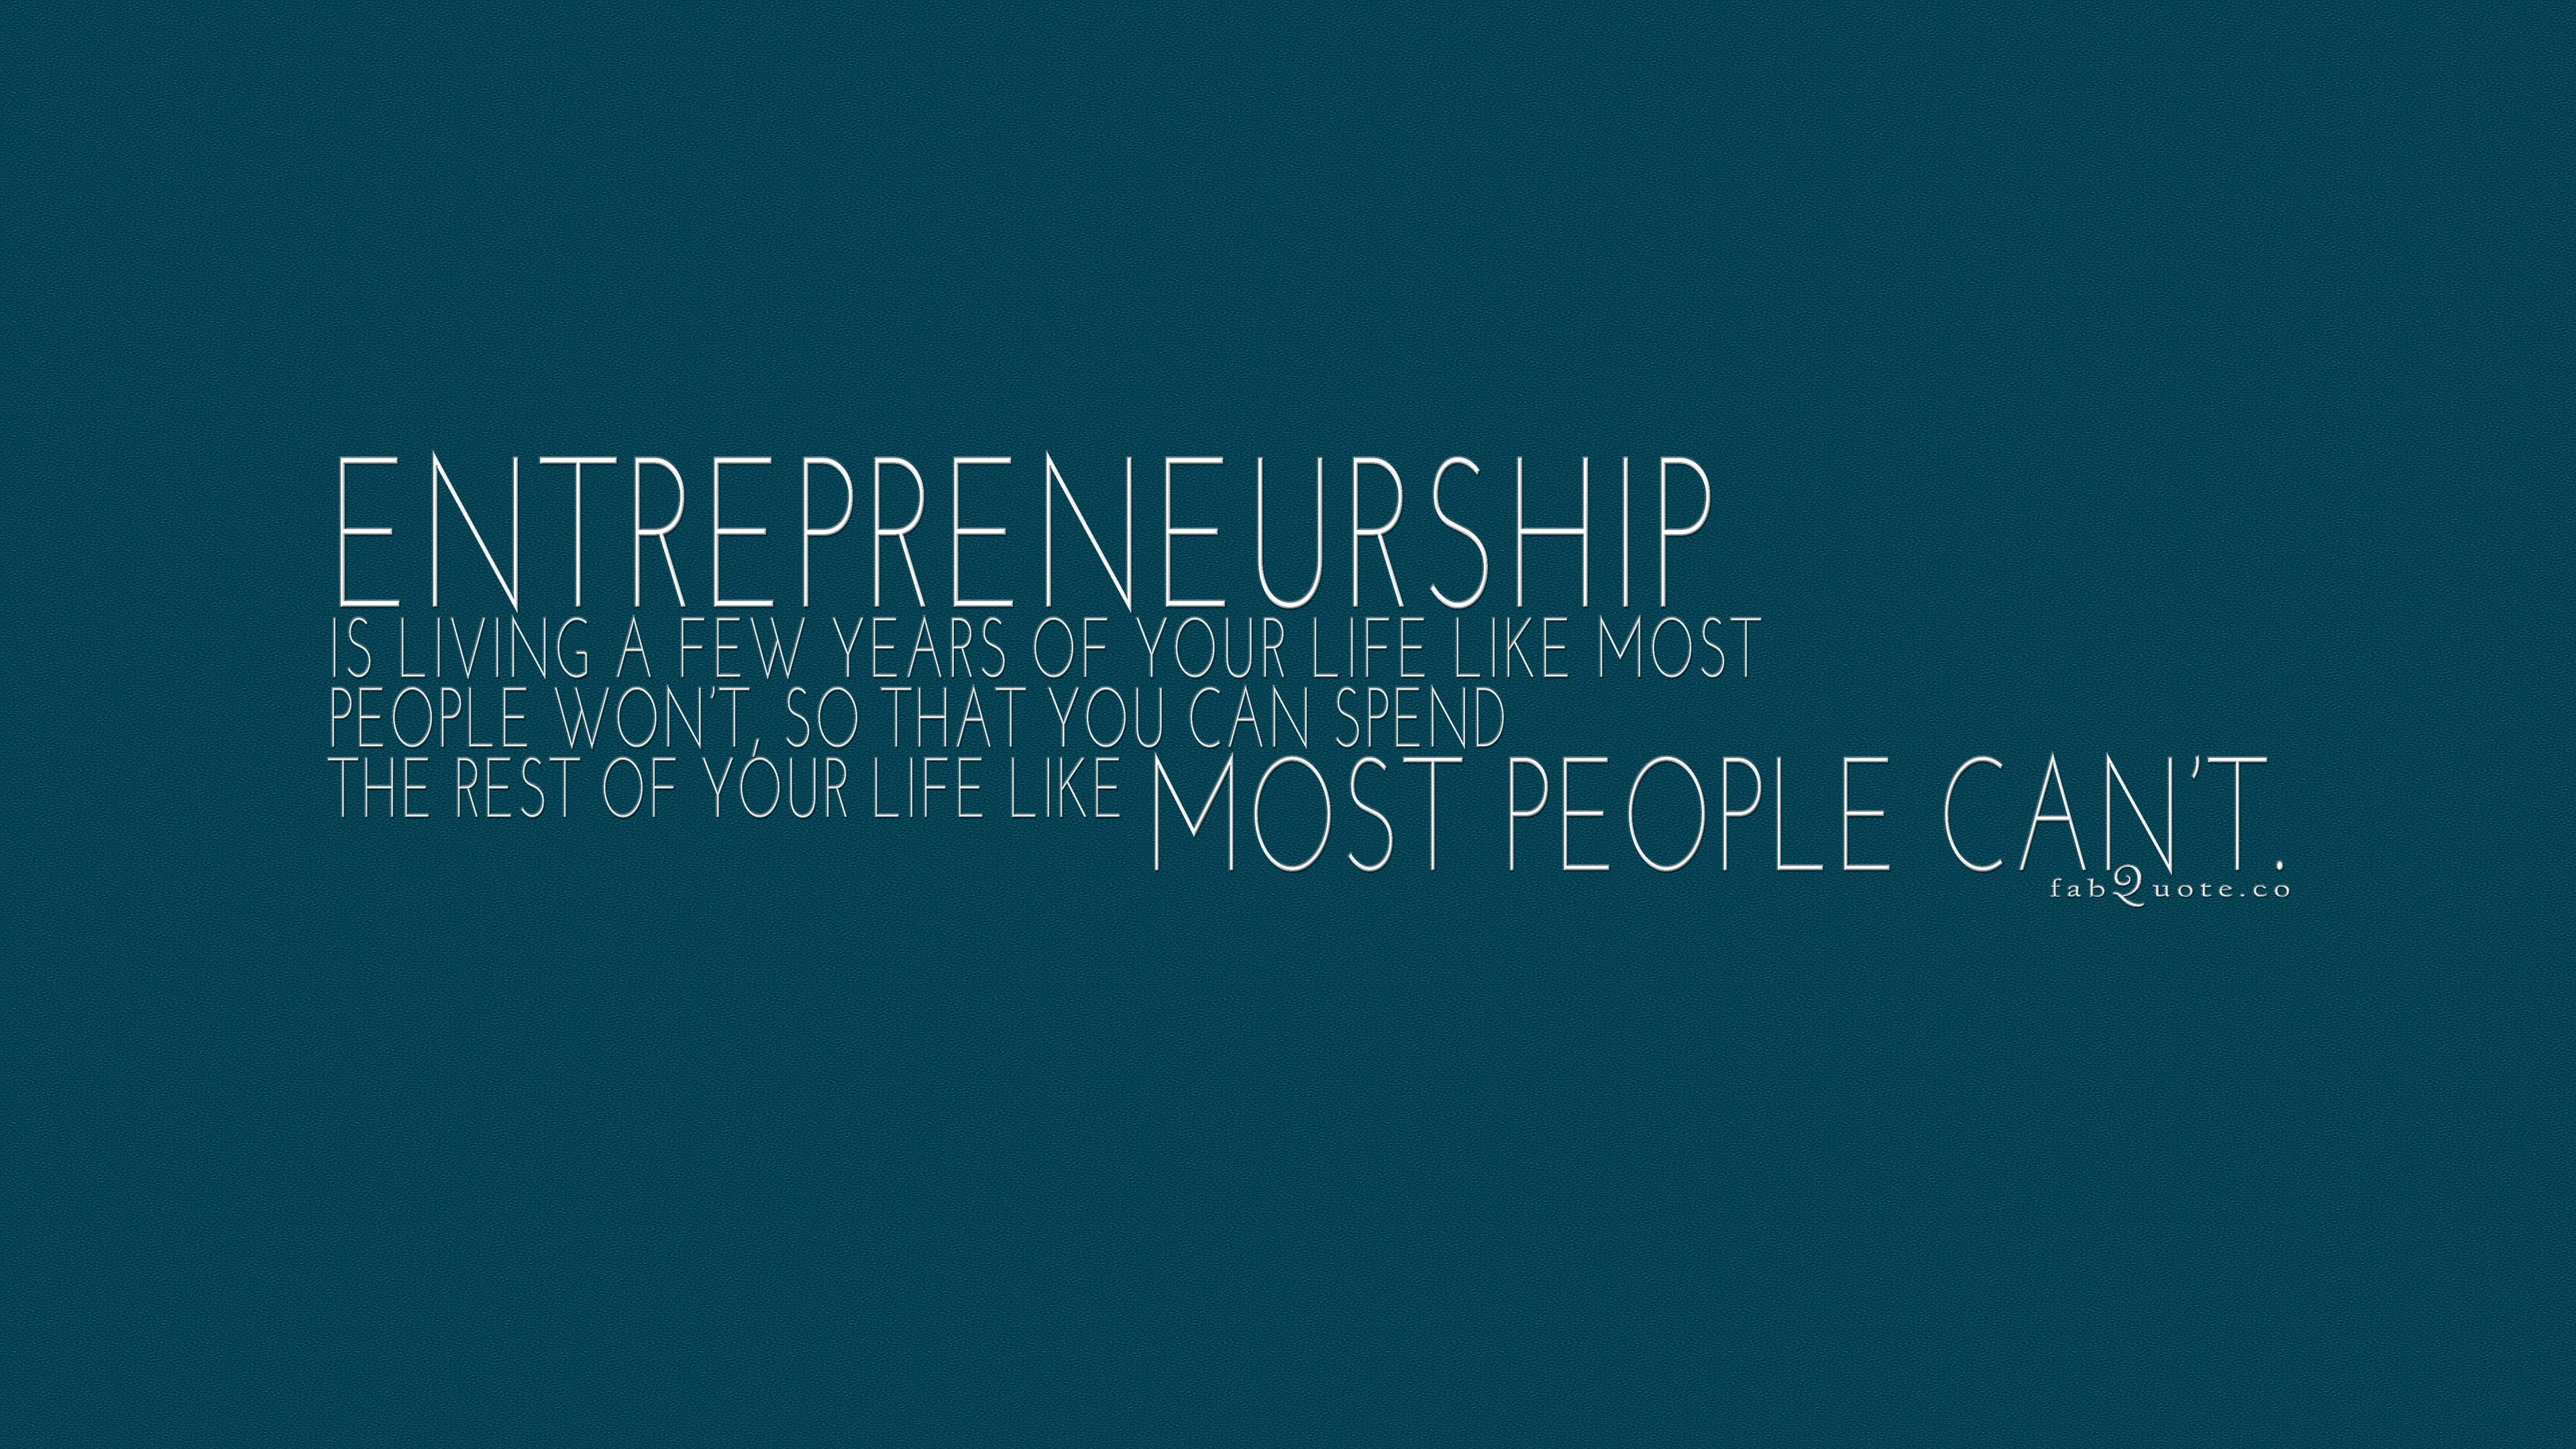 Entrepreneurship Wallpaper. Technological Entrepreneurship Wallpaper, Entrepreneurship Wallpaper and Entrepreneurship South Africa Wallpaper